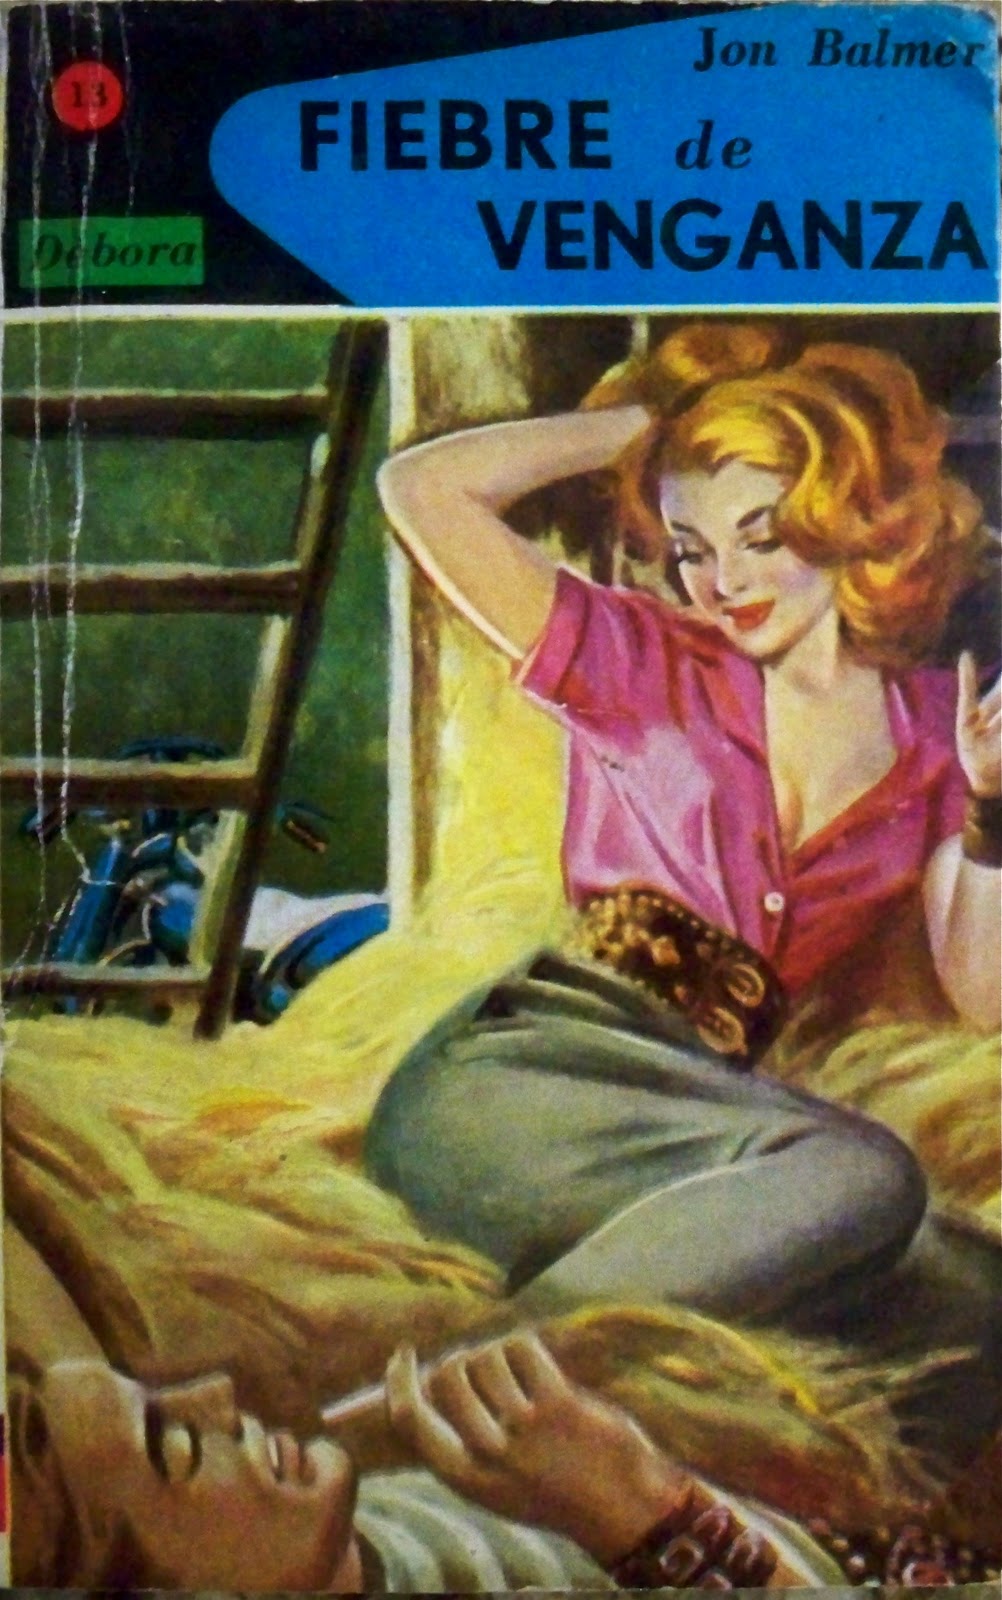 Vintage Paperback Cover Art: November 2011